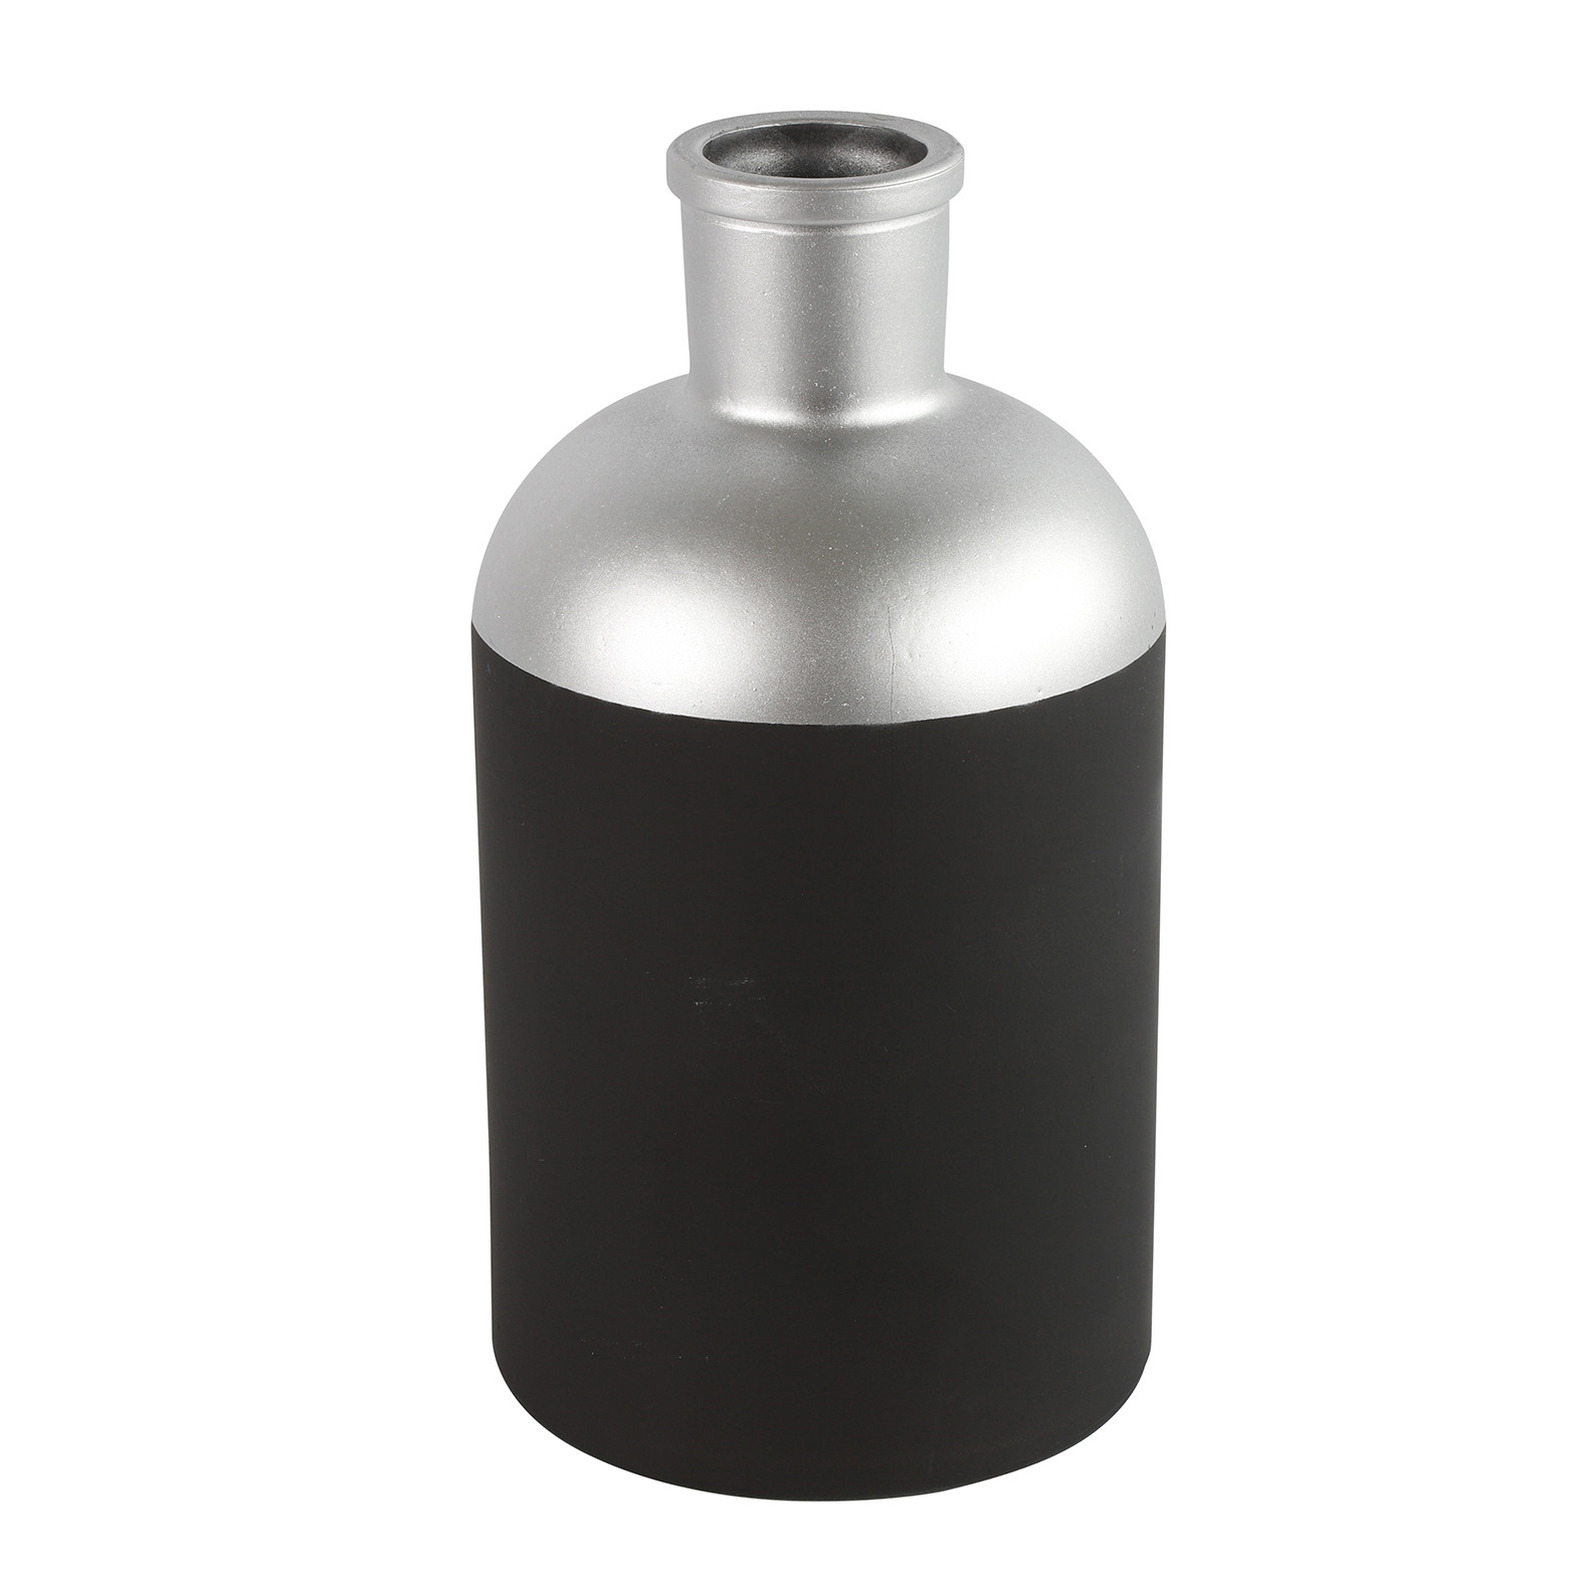 Countryfield Bloemen-Deco vaas zwart-zilver glas fles D14 x H26 cm